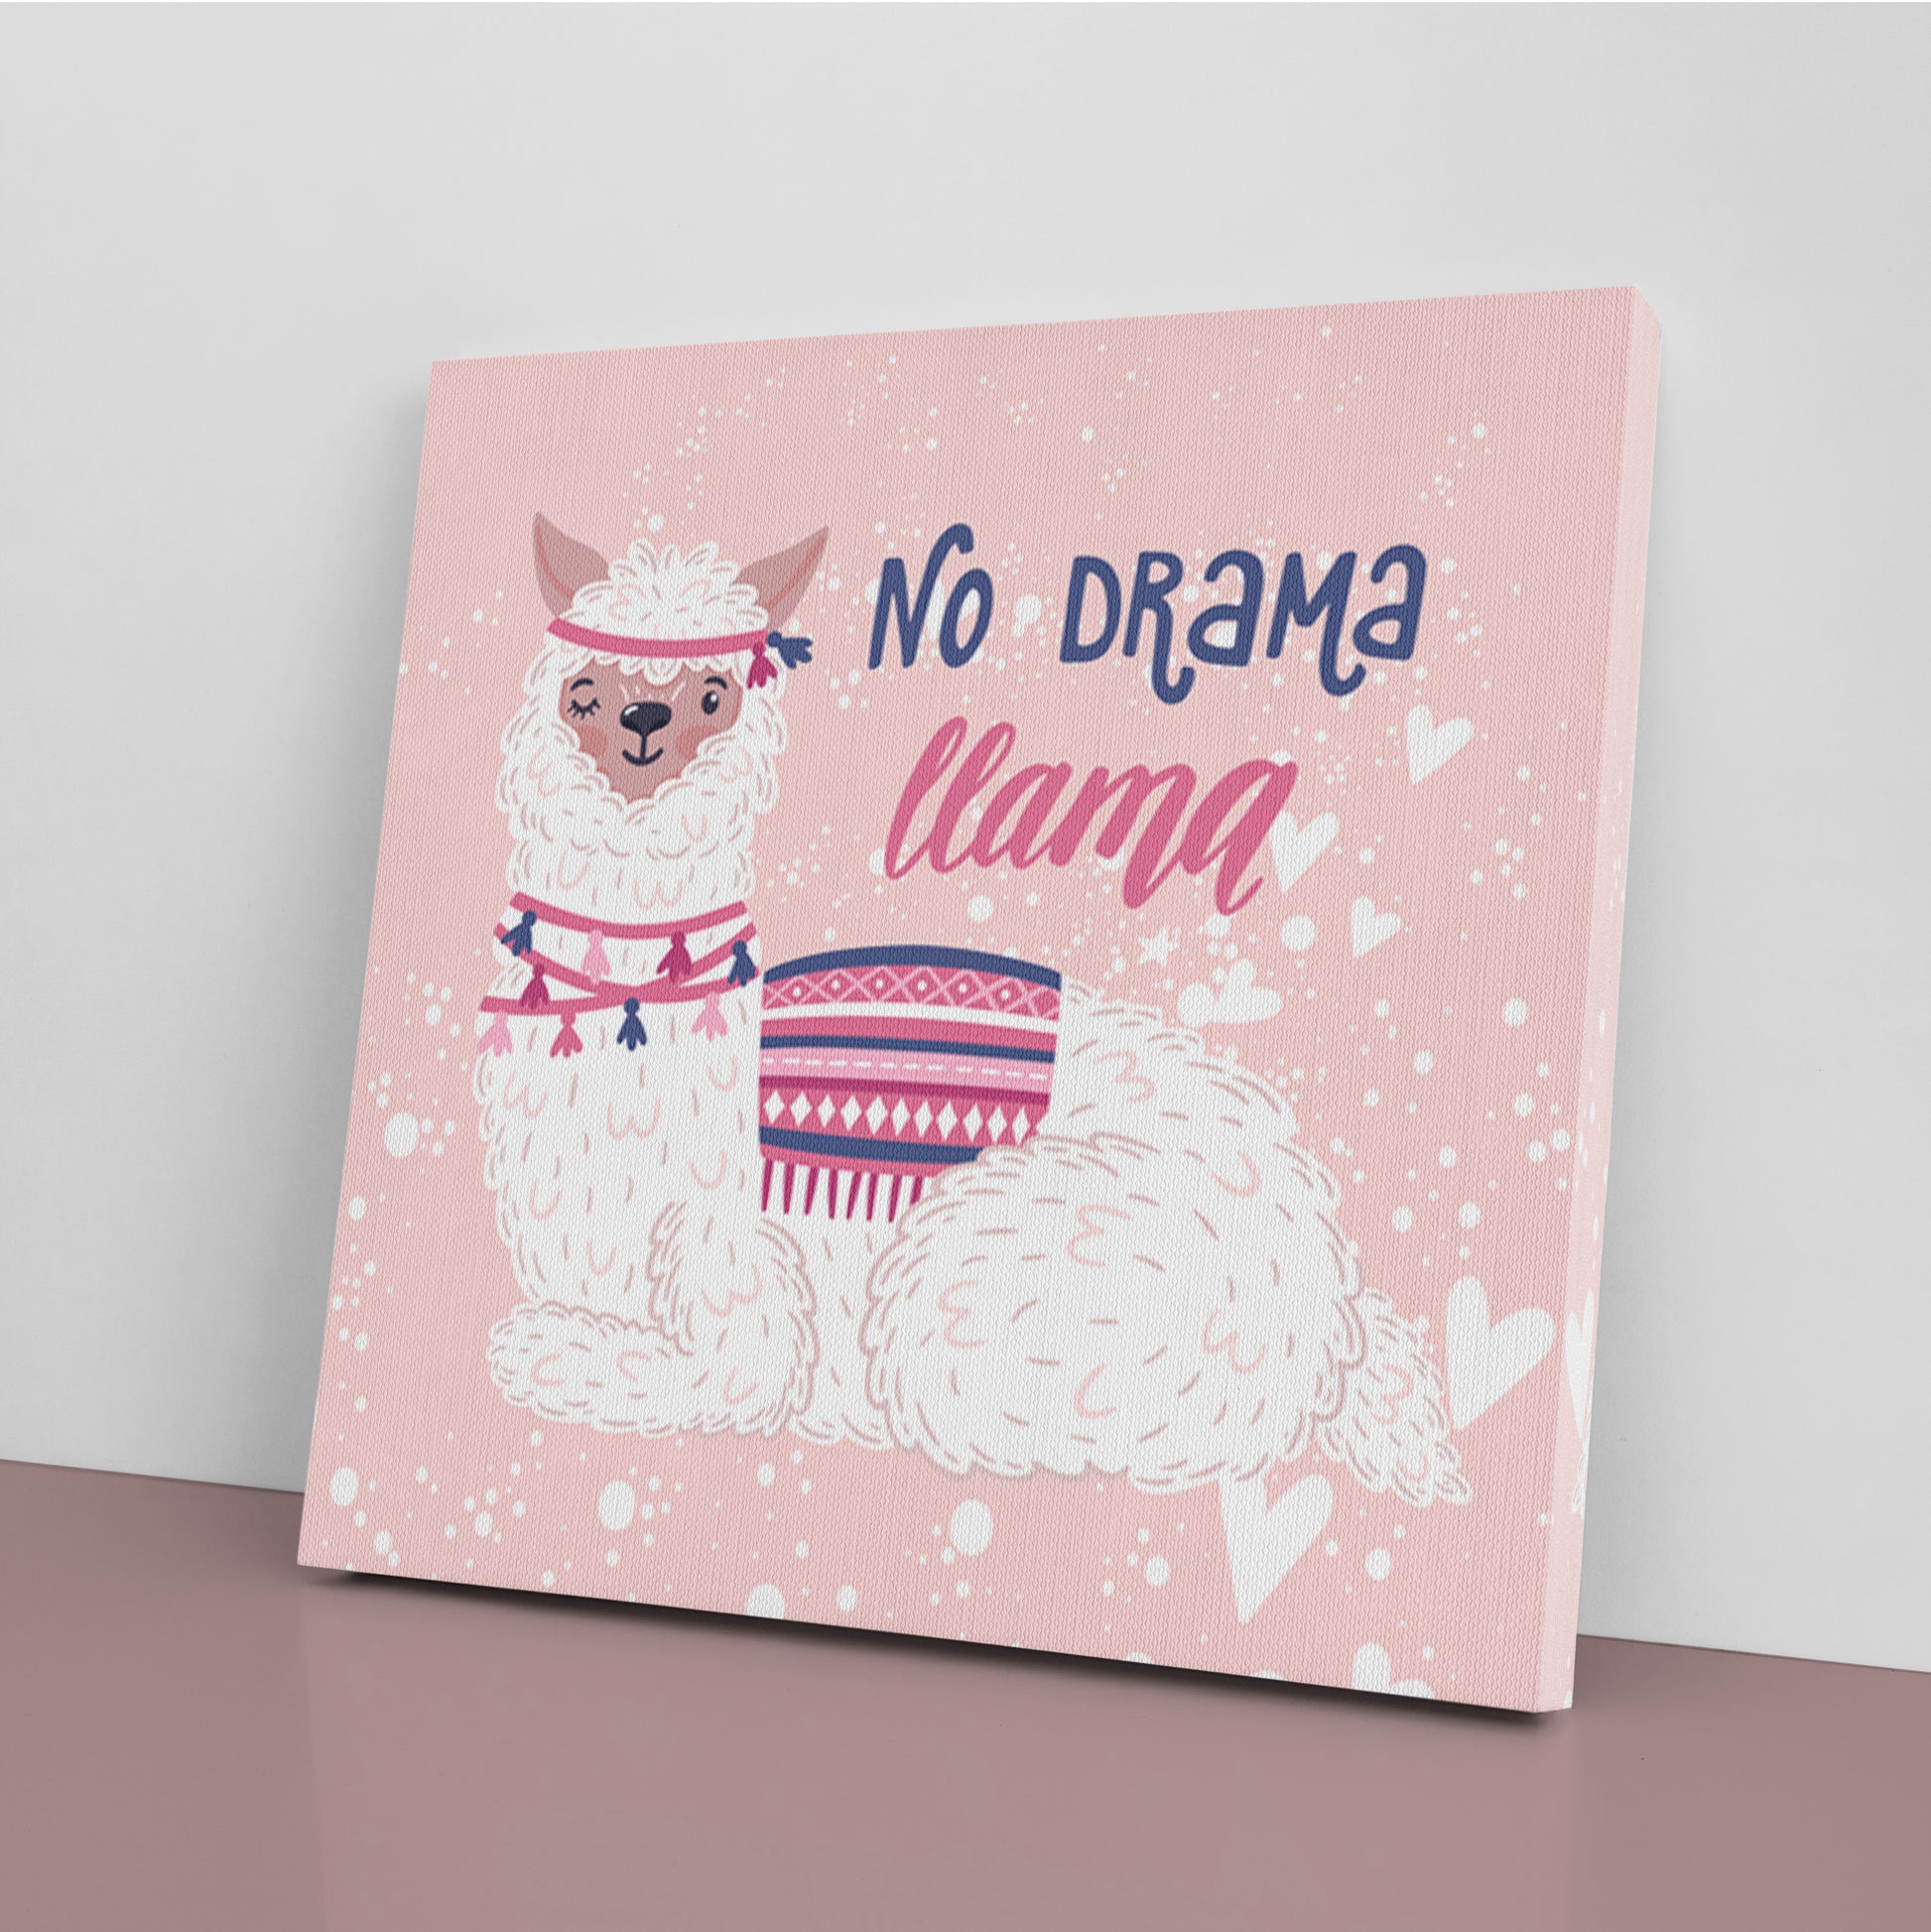 No Drama Llama Canvas Print ArtLexy   